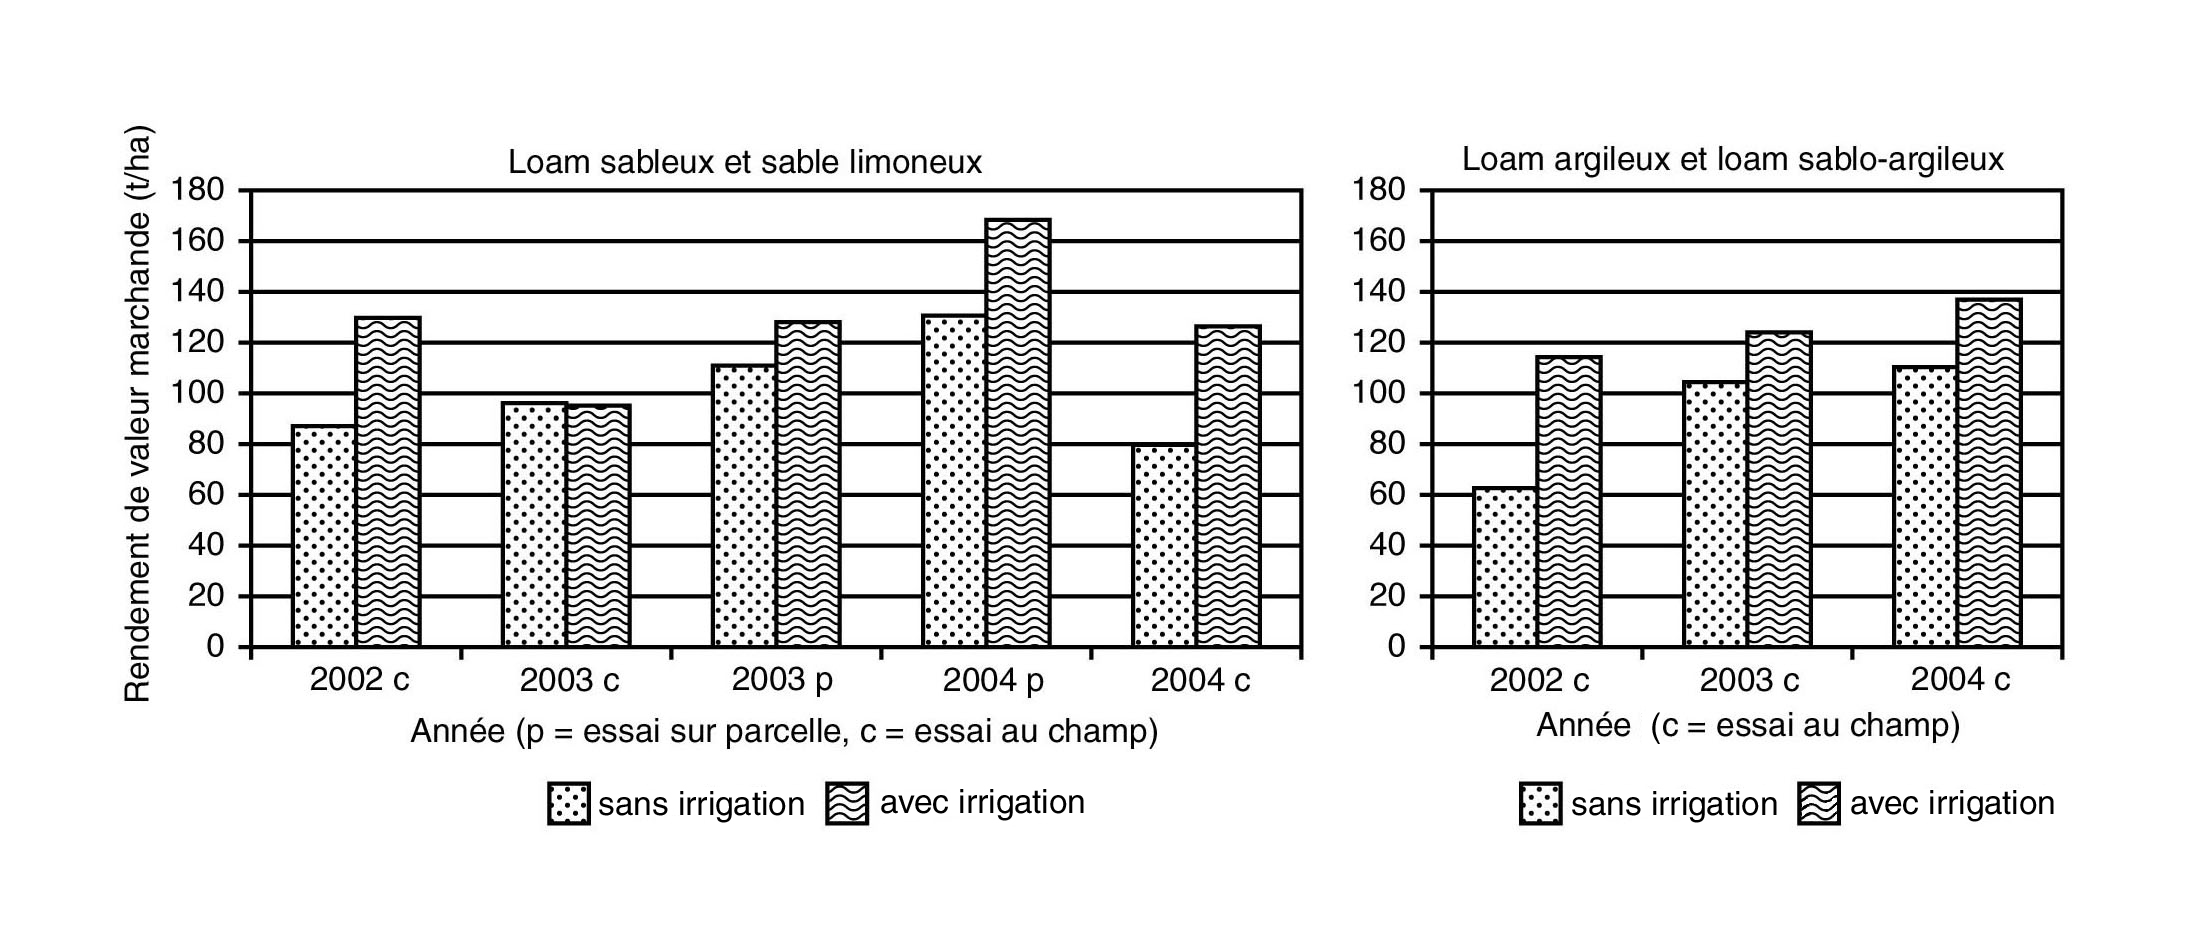 Graphique montrant les effets de l’irrigation de cultures de tomates de transformation sur le rendement de la valeur marchande pour des loams sableux, des sables limoneux, des loams argileux et des loams sablo-argileux entre 2002 et 2004